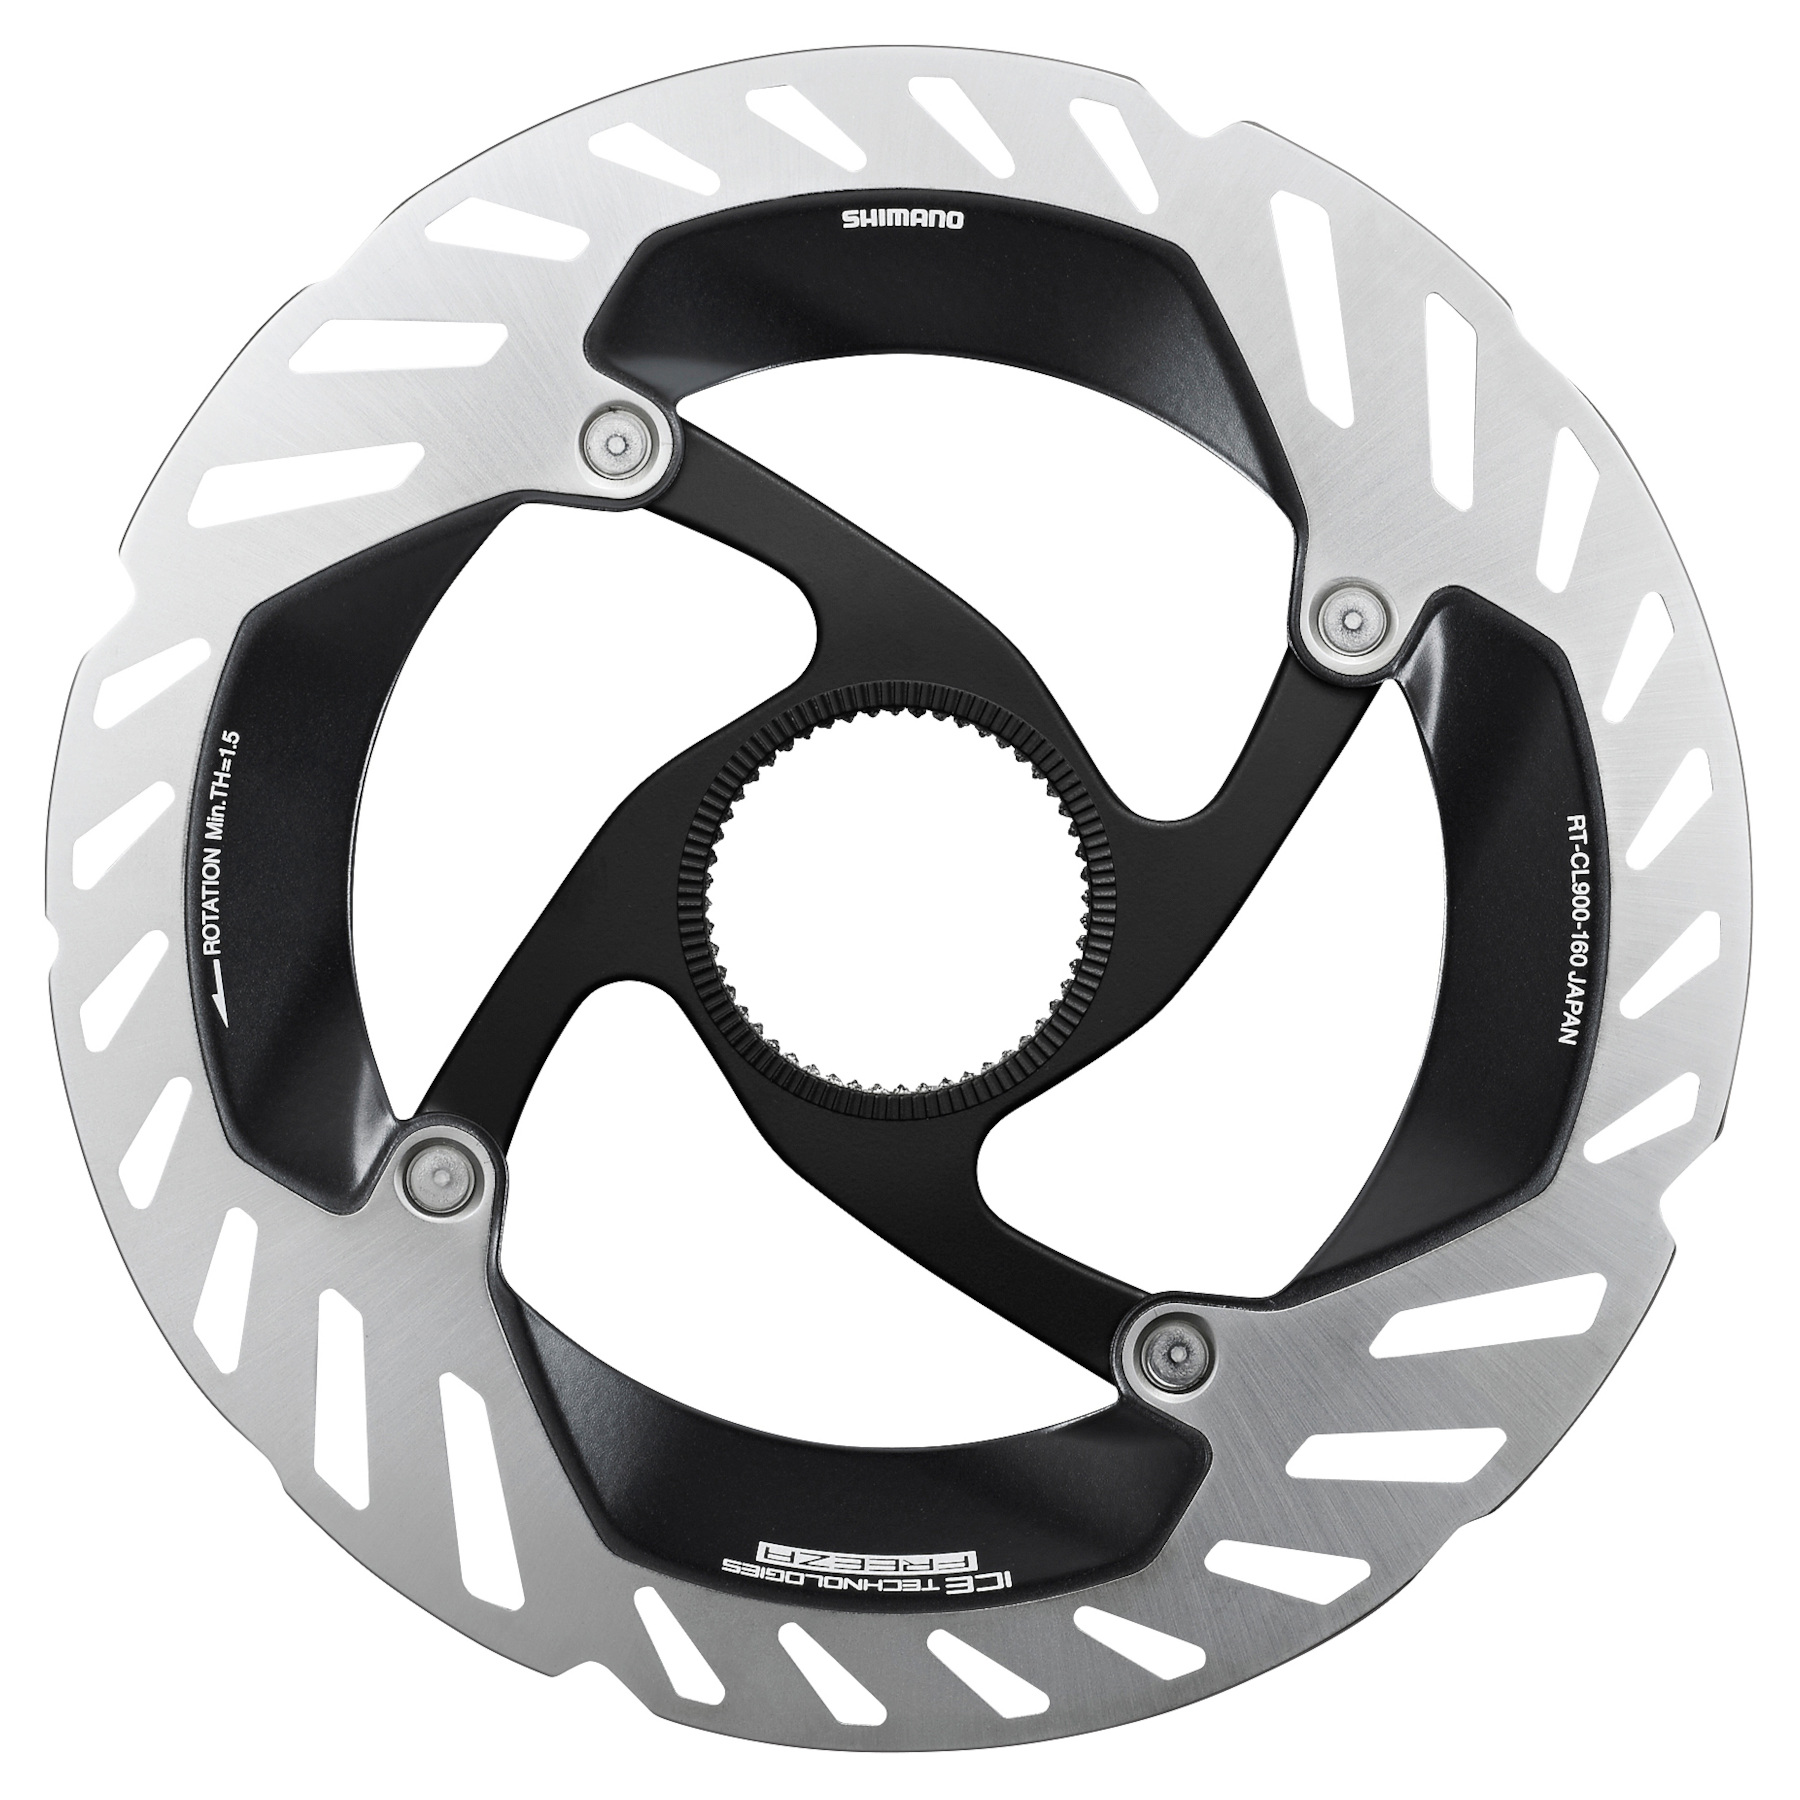 Produktbild von Shimano RT-CL900 Bremsscheibe - Centerlock | Ice-Tech Freeza